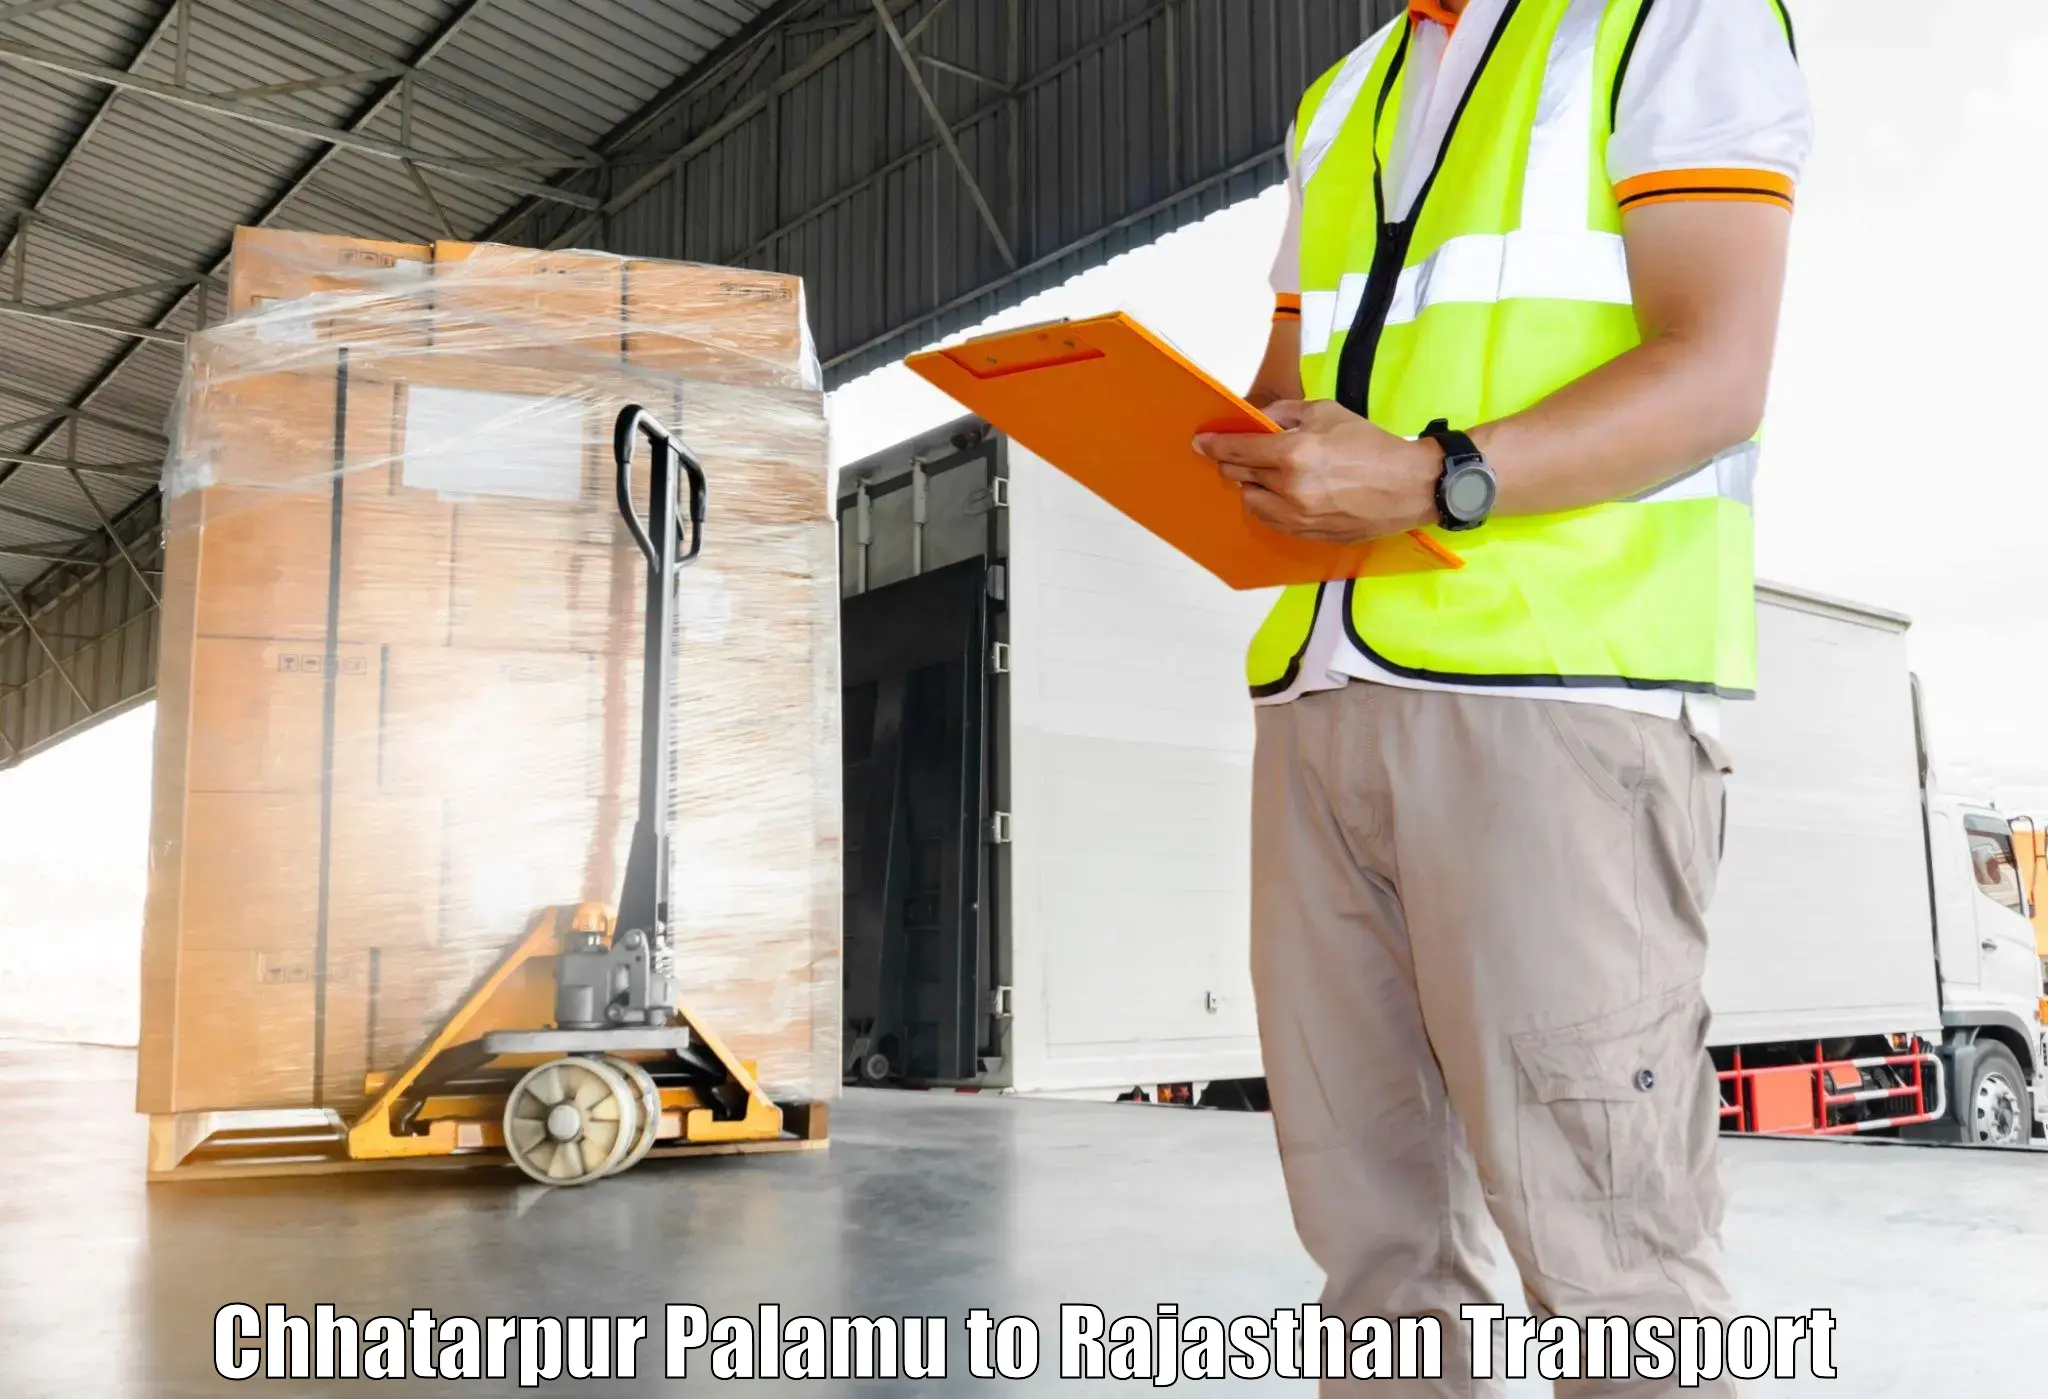 Road transport services Chhatarpur Palamu to Pratapgarh Rajasthan